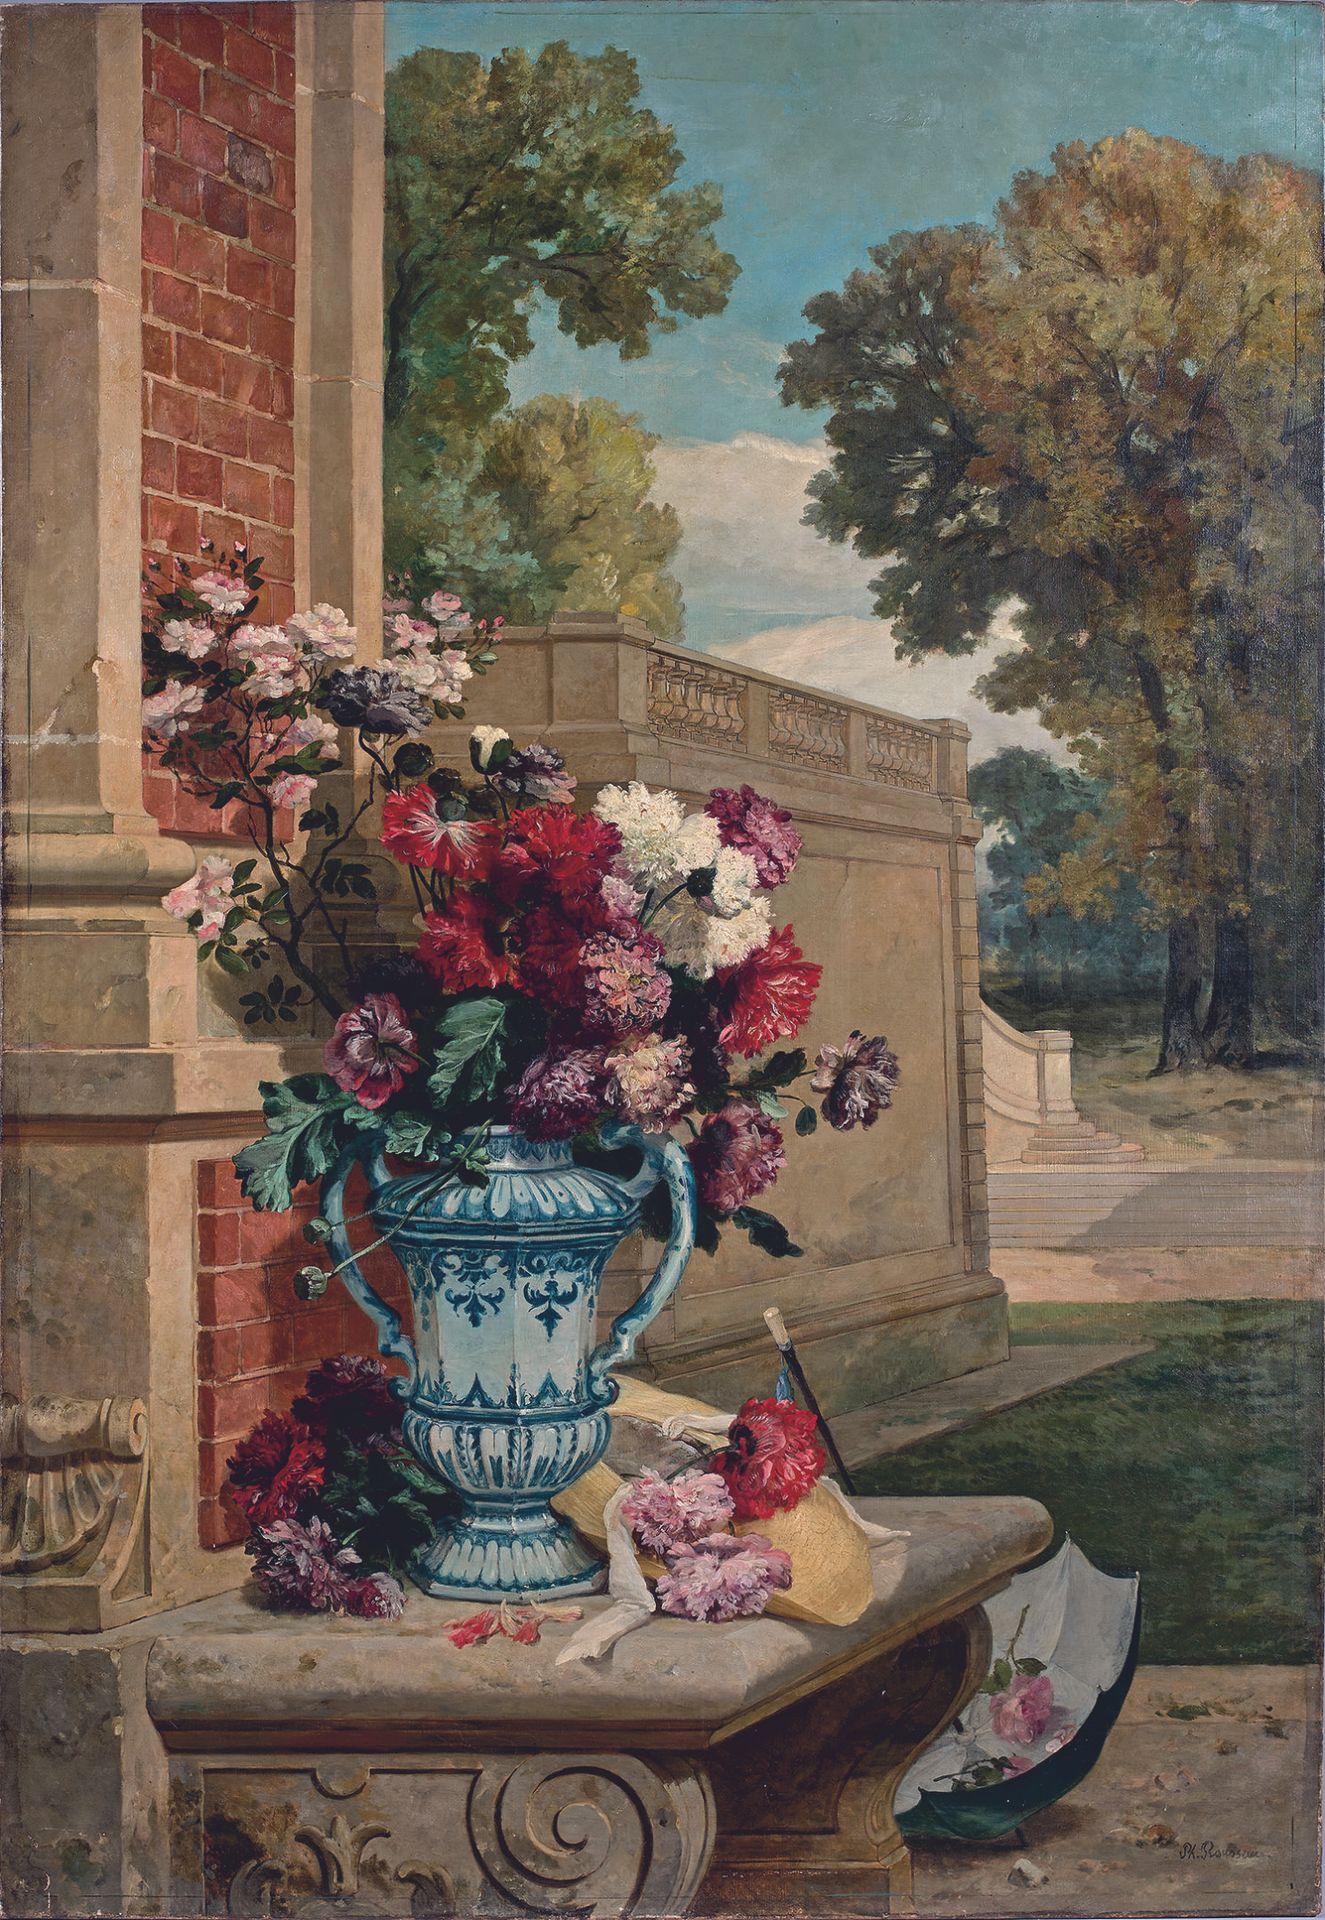 Null Philippe ROUSSEAU (1816-1887)
Jarrón de flores sobre un banco en un jardín
&hellip;